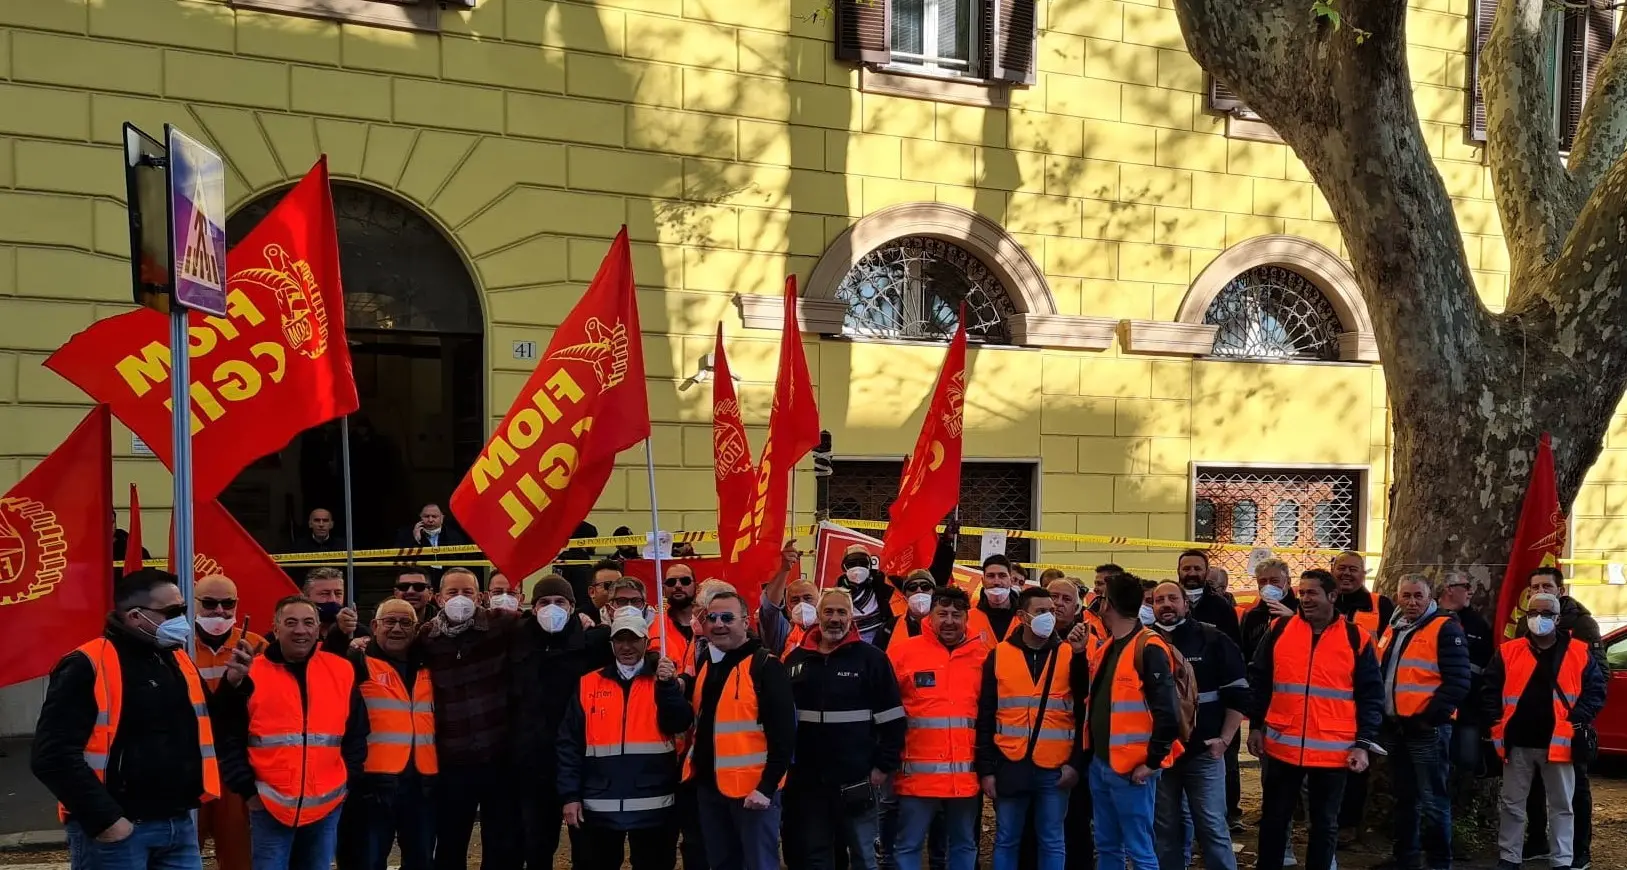 Alstom: Fiom Cgil, presidio per salari e condizioni di lavoro